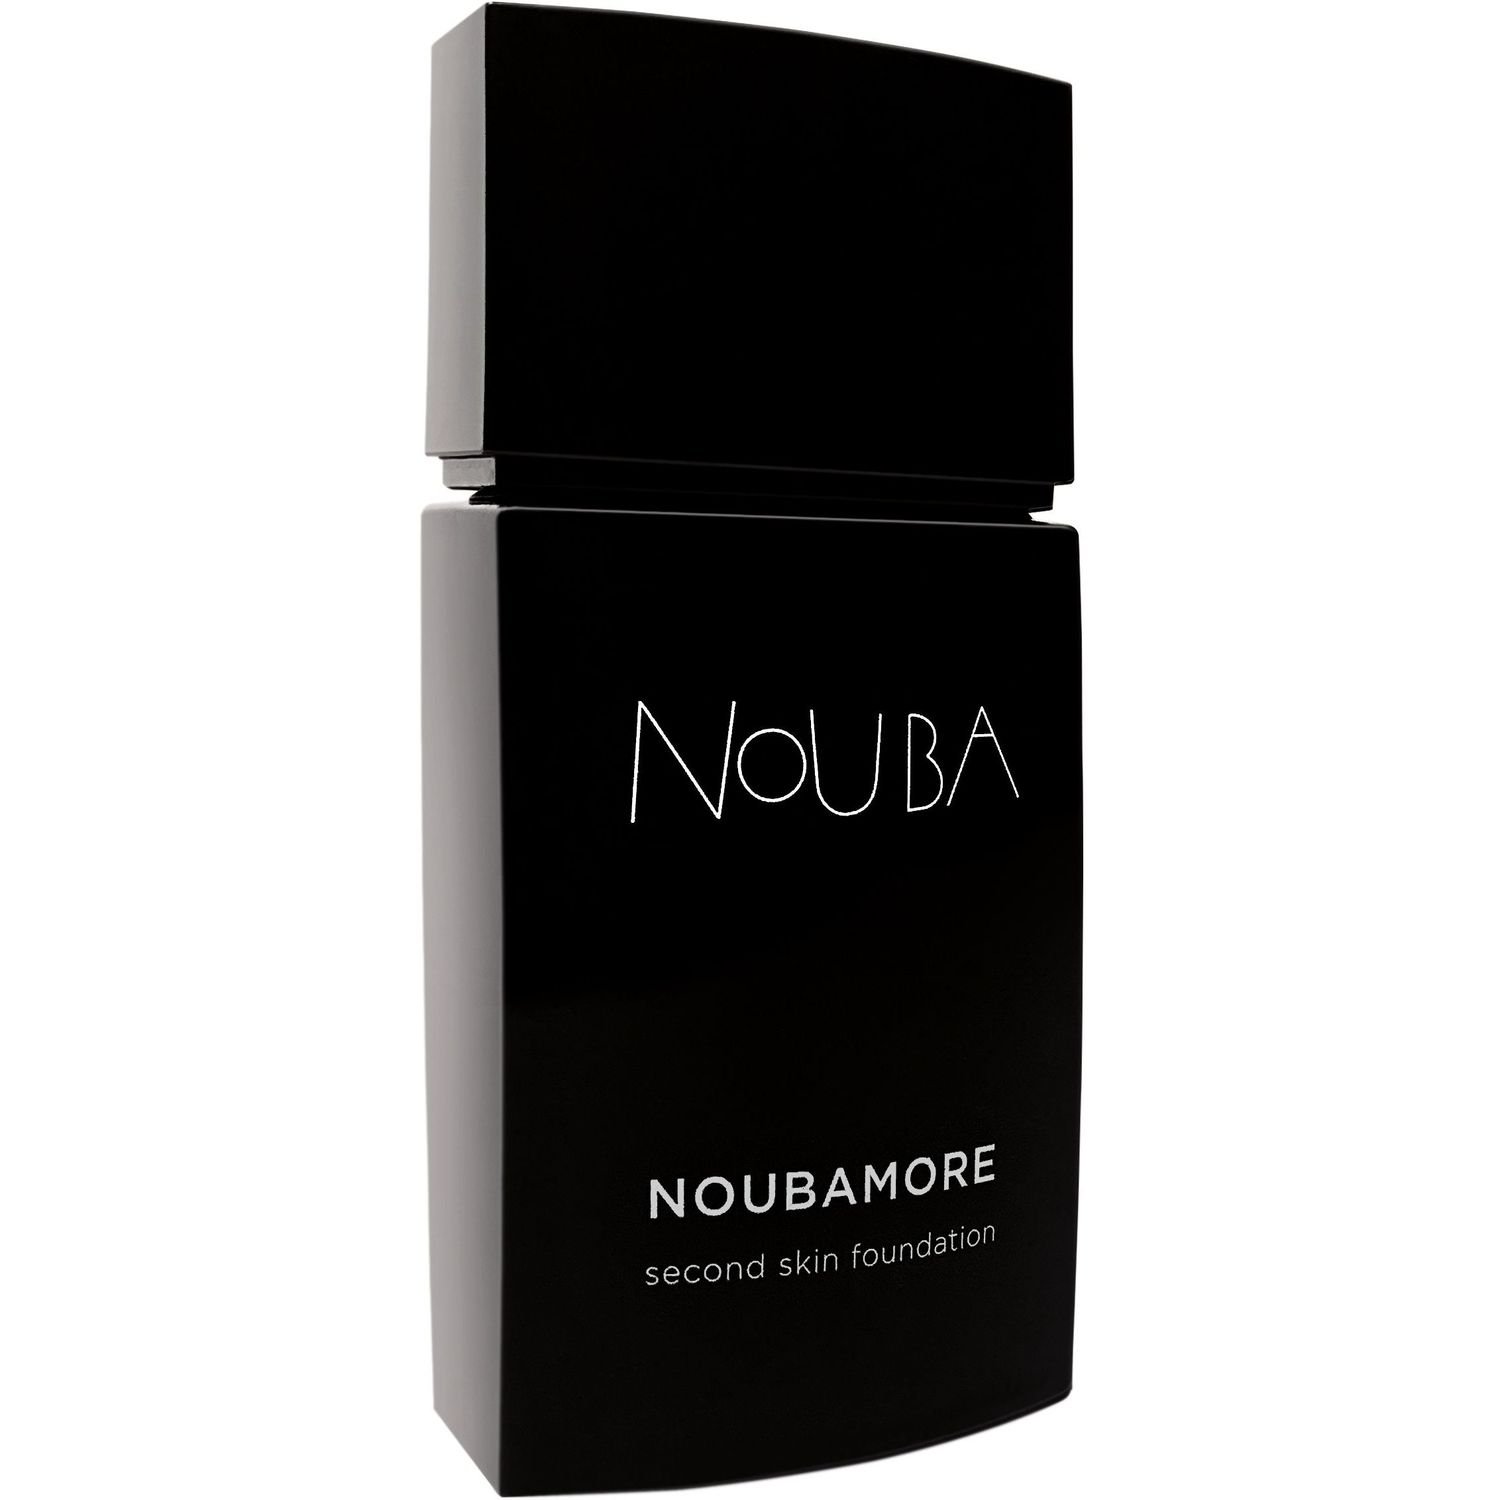 Тональная основа Nouba Noubamore Second Skin тон 84, 30 мл - фото 1